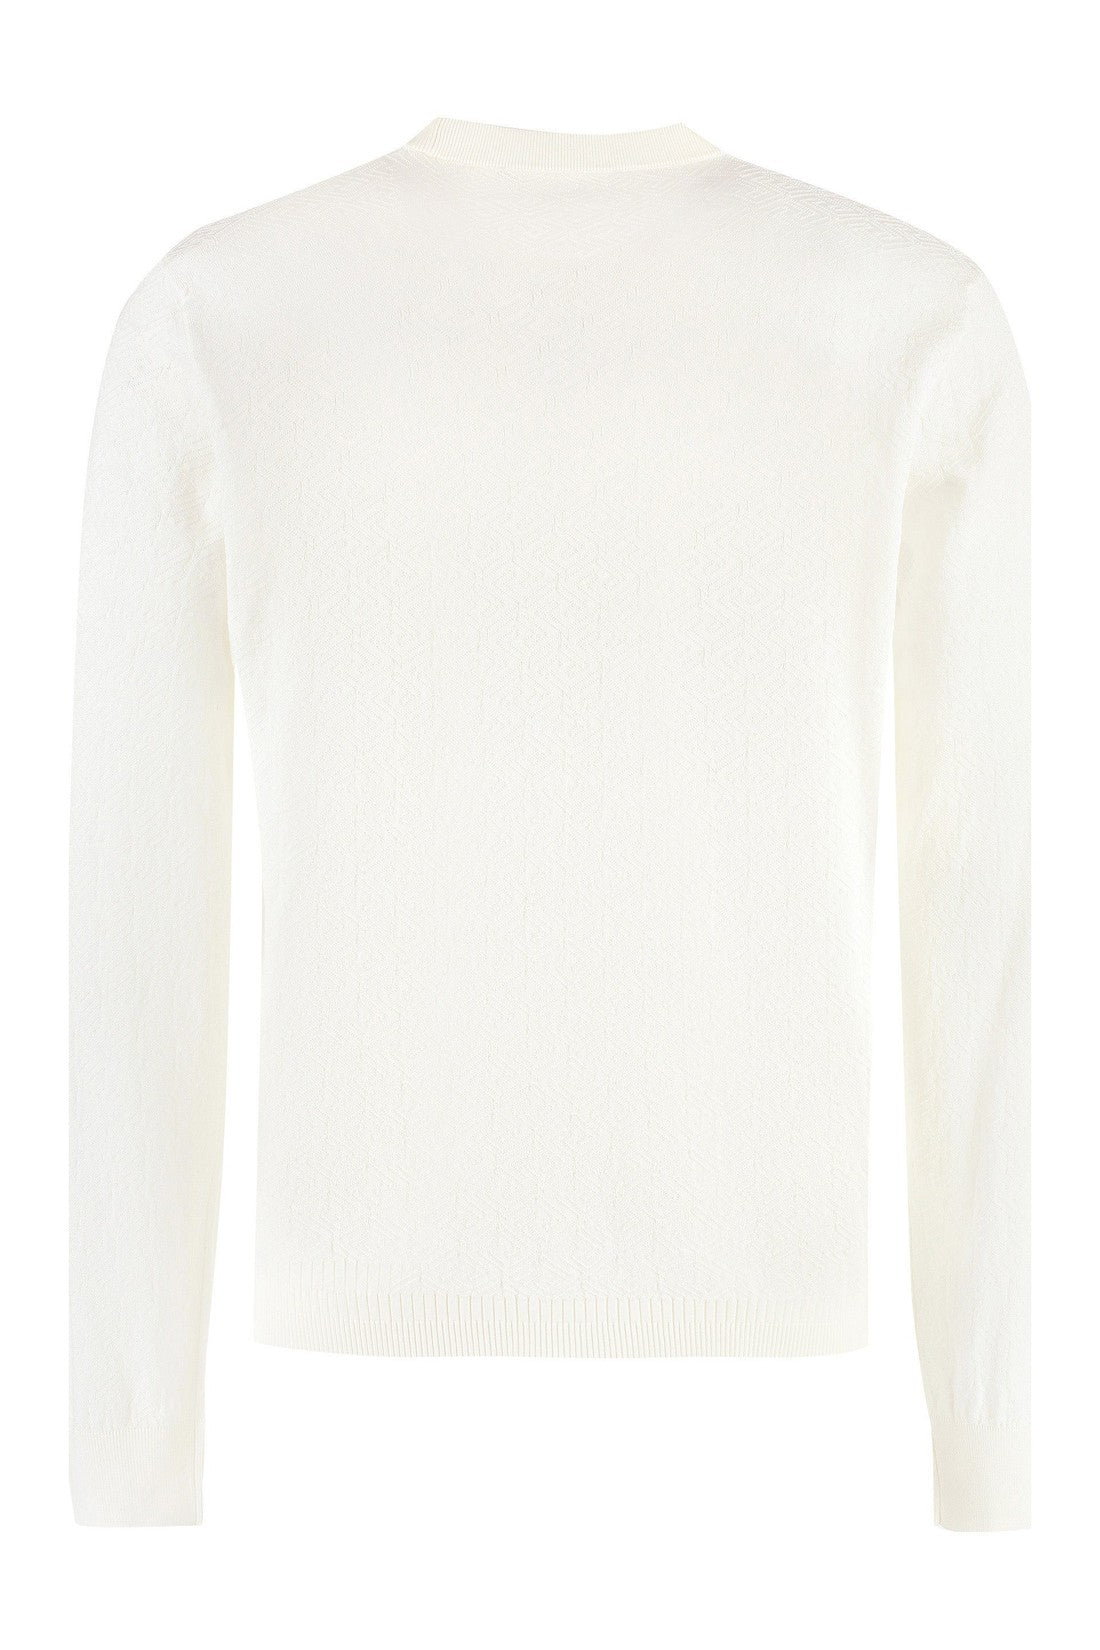 Versace-OUTLET-SALE-Long sleeve cotton blend t-shirt-ARCHIVIST